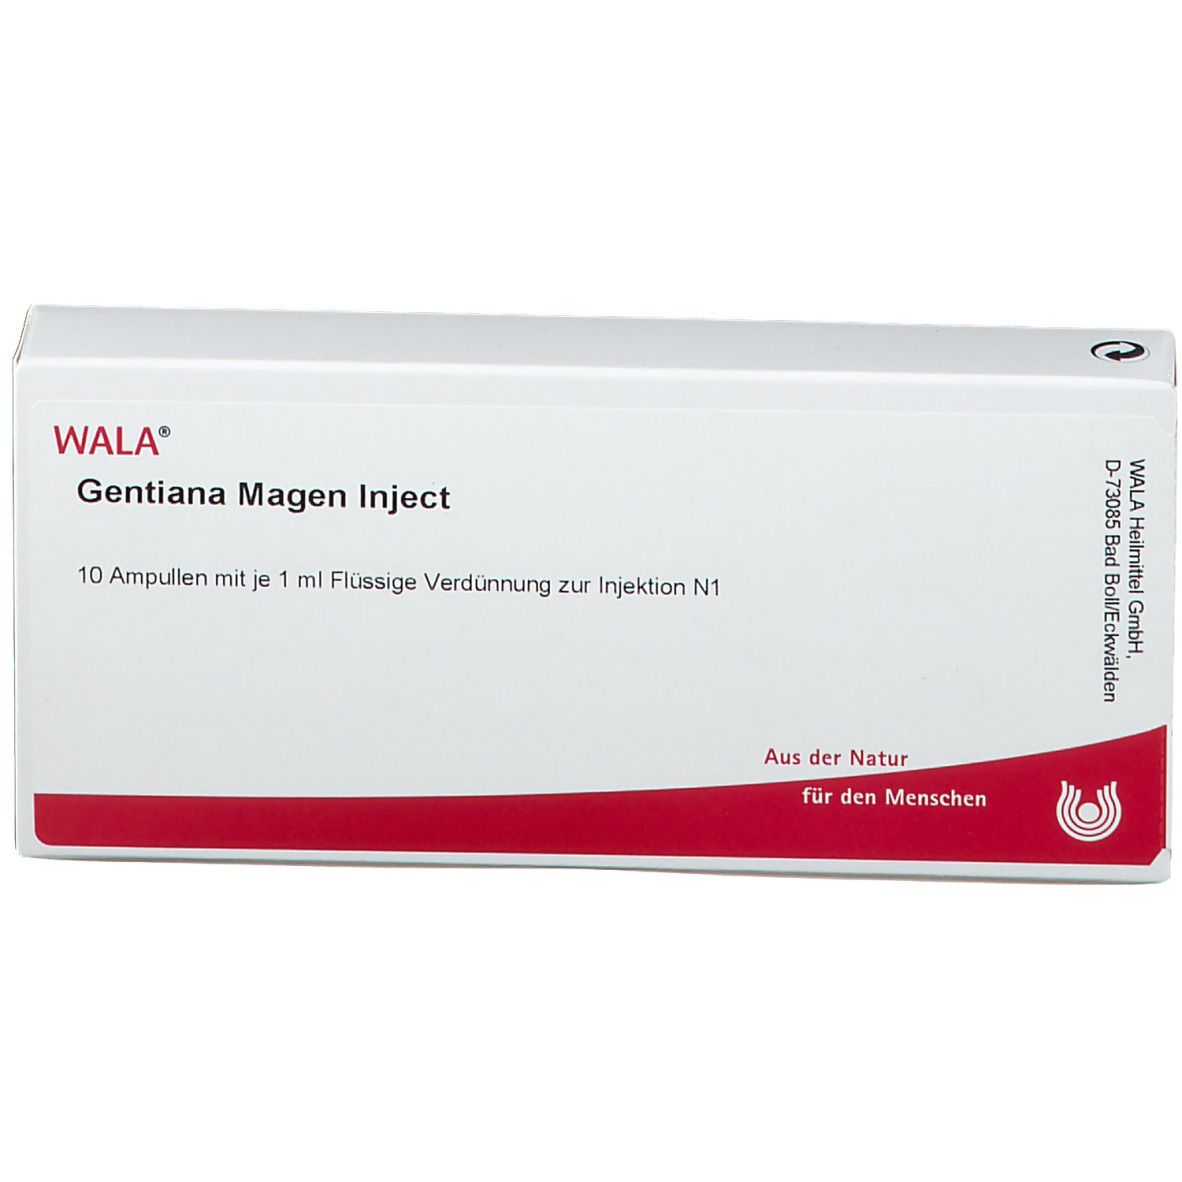 WALA® Gentiana Magen Inject Ampullen